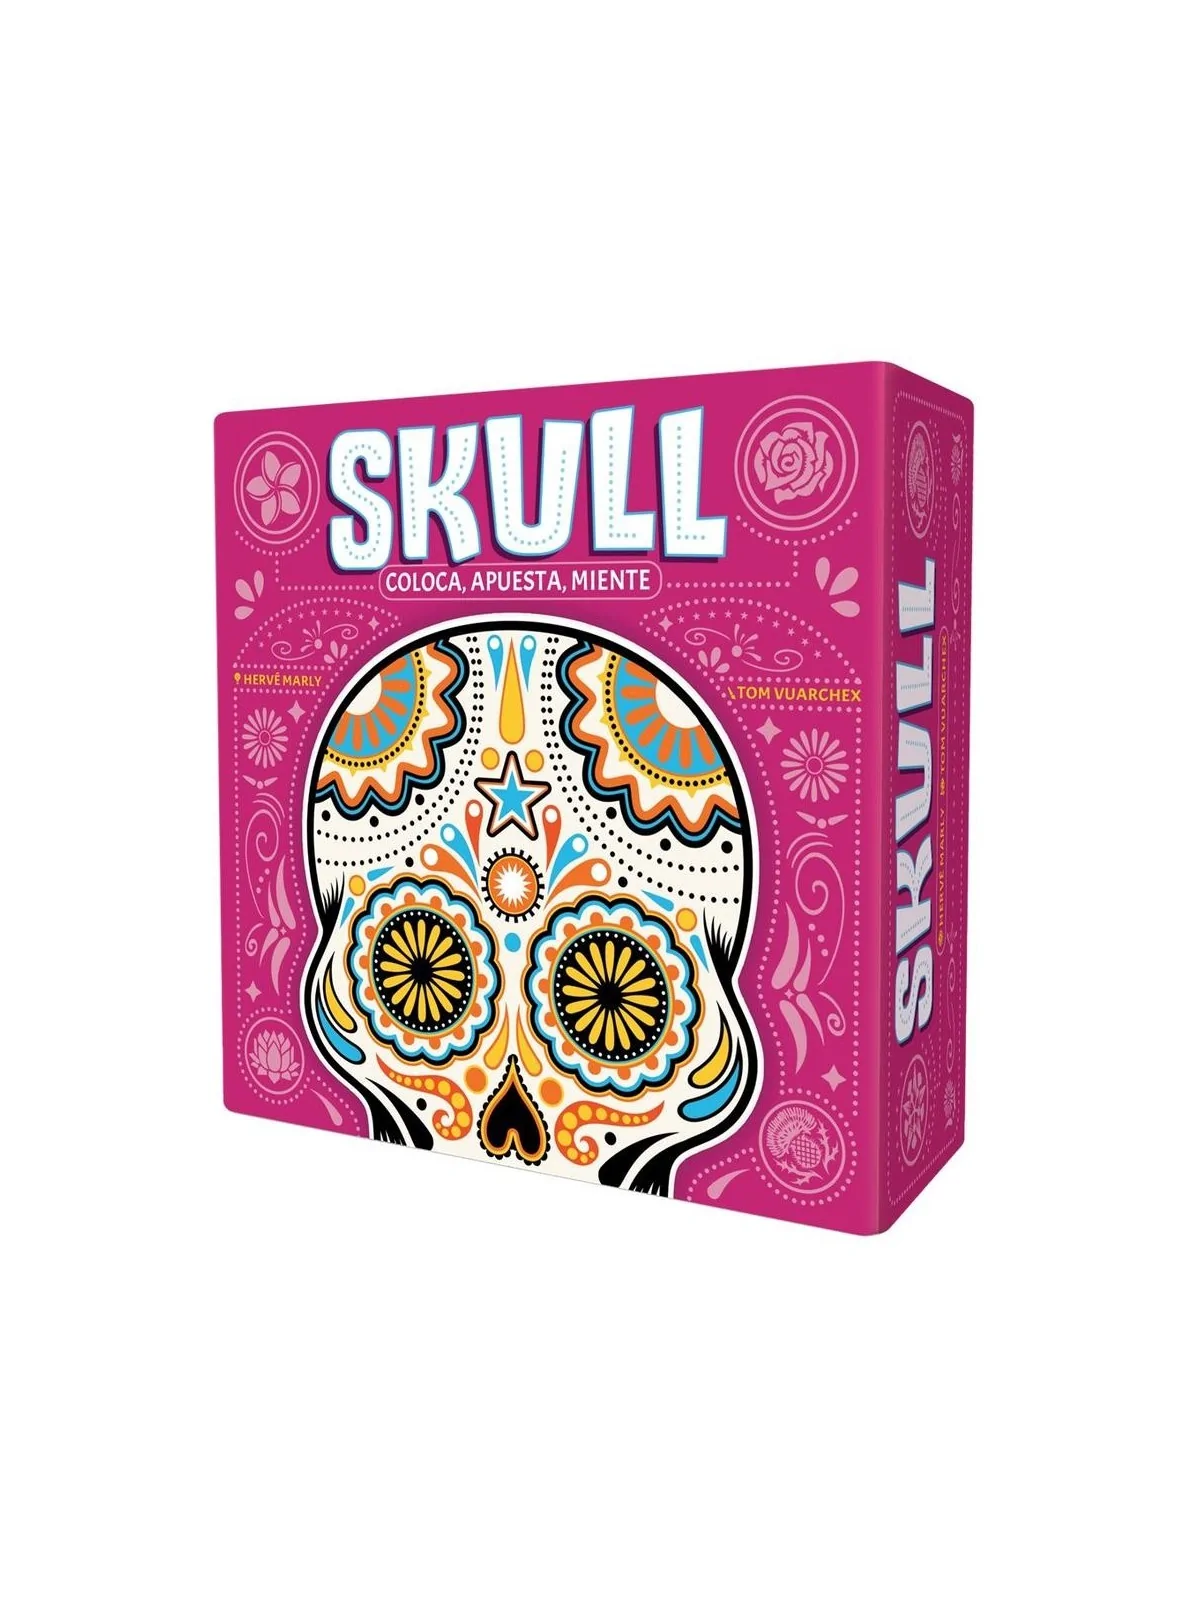 Comprar Skull: Nueva Edicion barato al mejor precio 16,96 € de Juegos